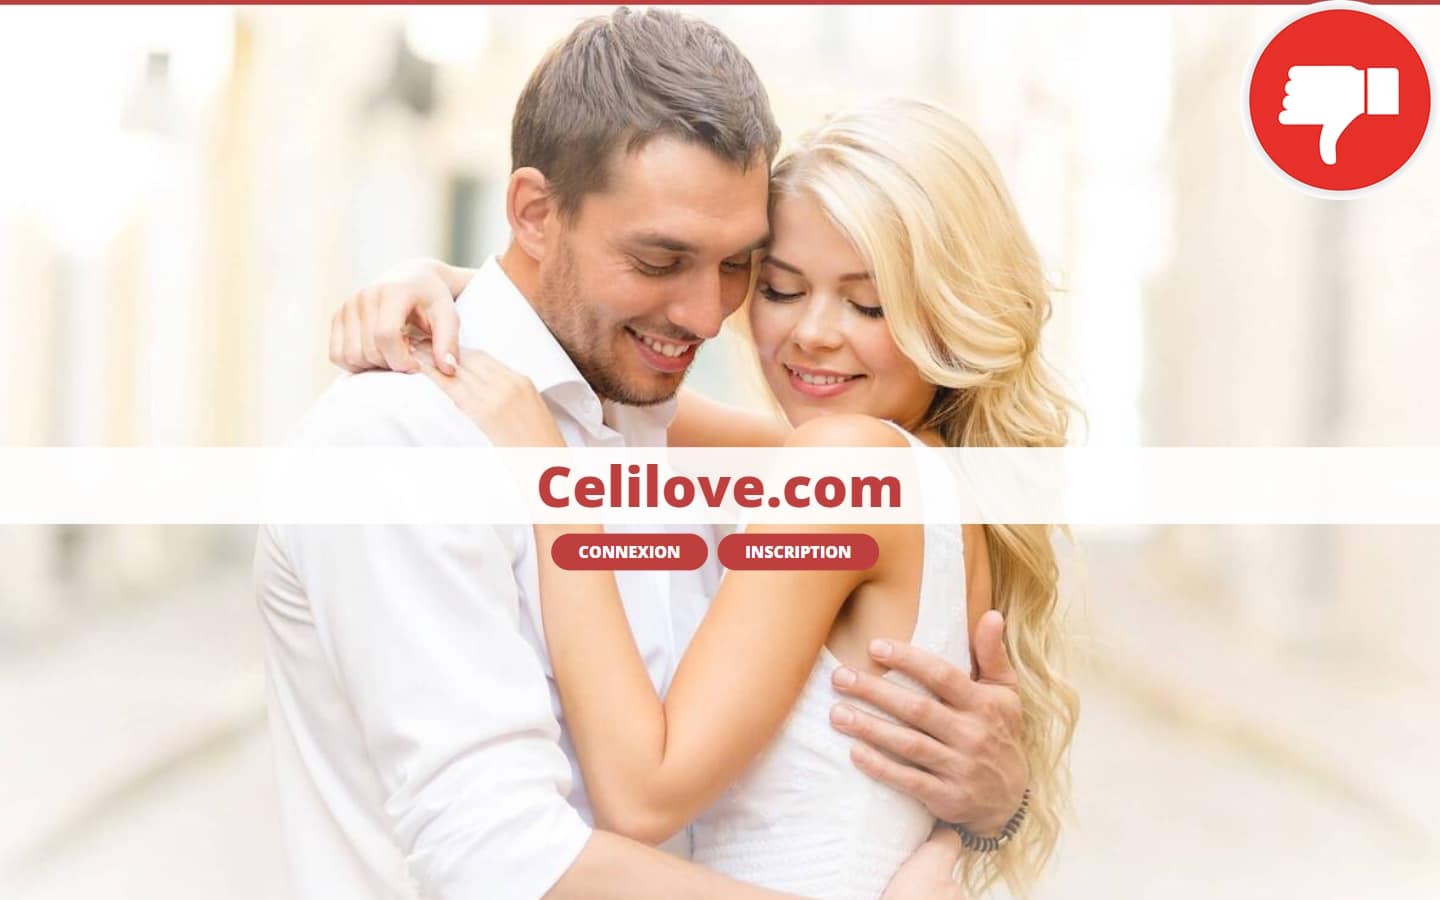 CeliLove.com